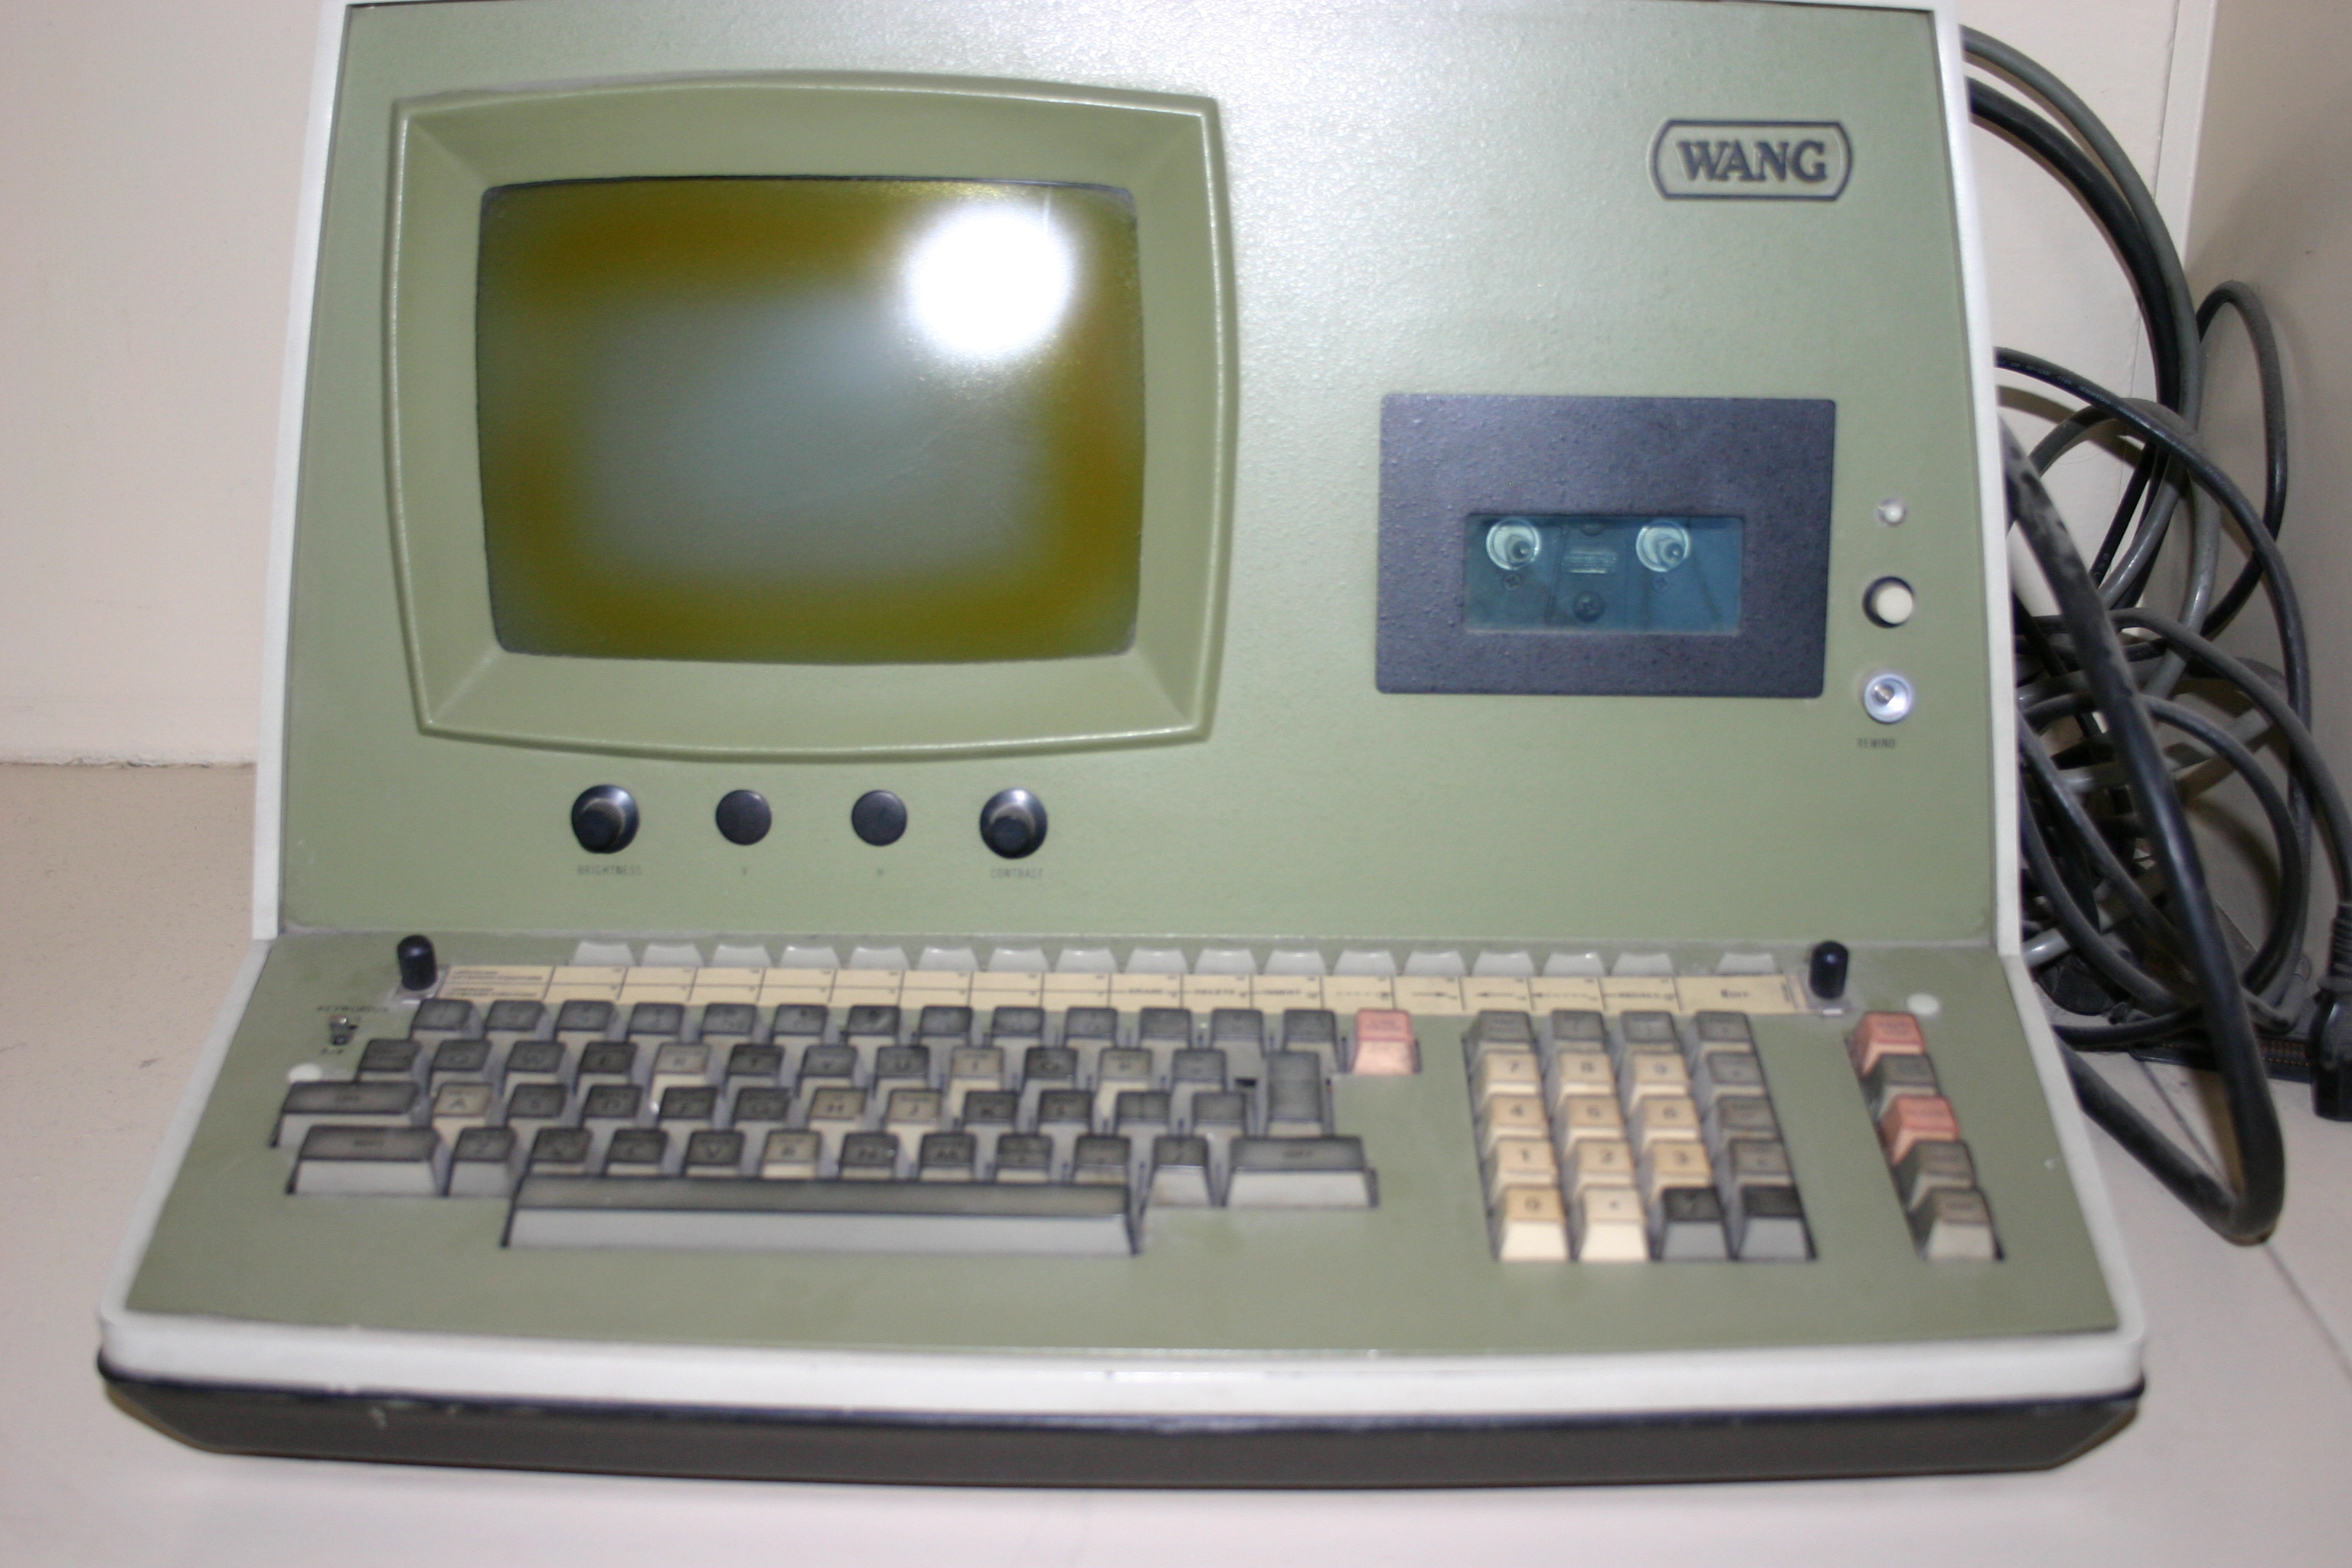 Wang 2200 Personal Computer